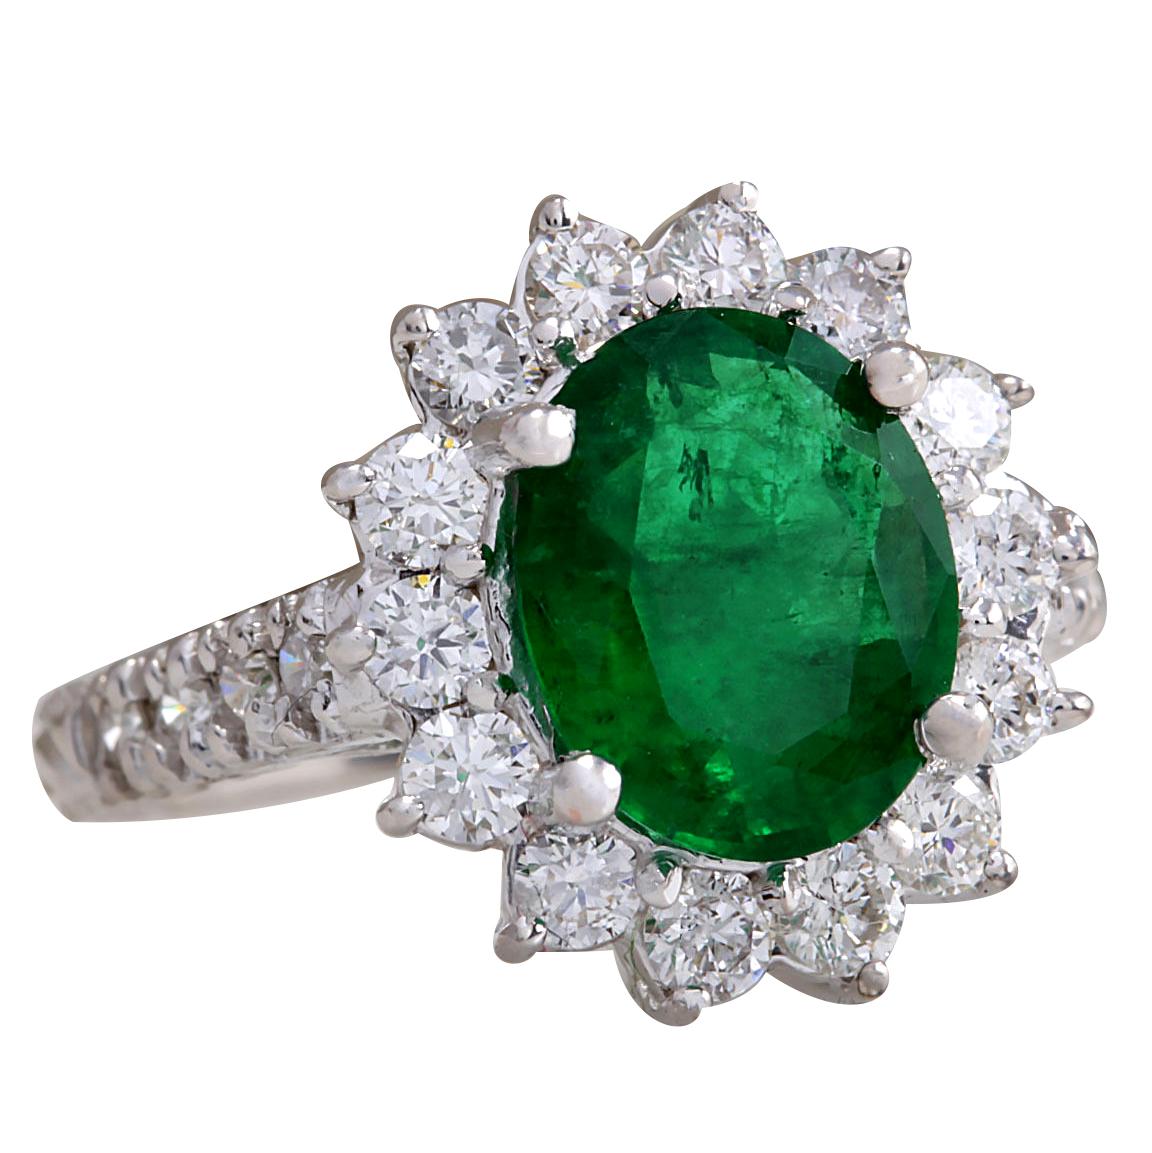 3.08 Carat Natural Emerald 14 Karat White Gold Diamond Ring
Stamped: 14K White Gold
Total Ring Weight: 5.0 Grams
Total Natural Emerald Weight is 2.08 Carat (Measures: 10.00x8.00 mm)
Color: Green
Total Natural Diamond Weight is 1.00 Carat
Color: F-G,